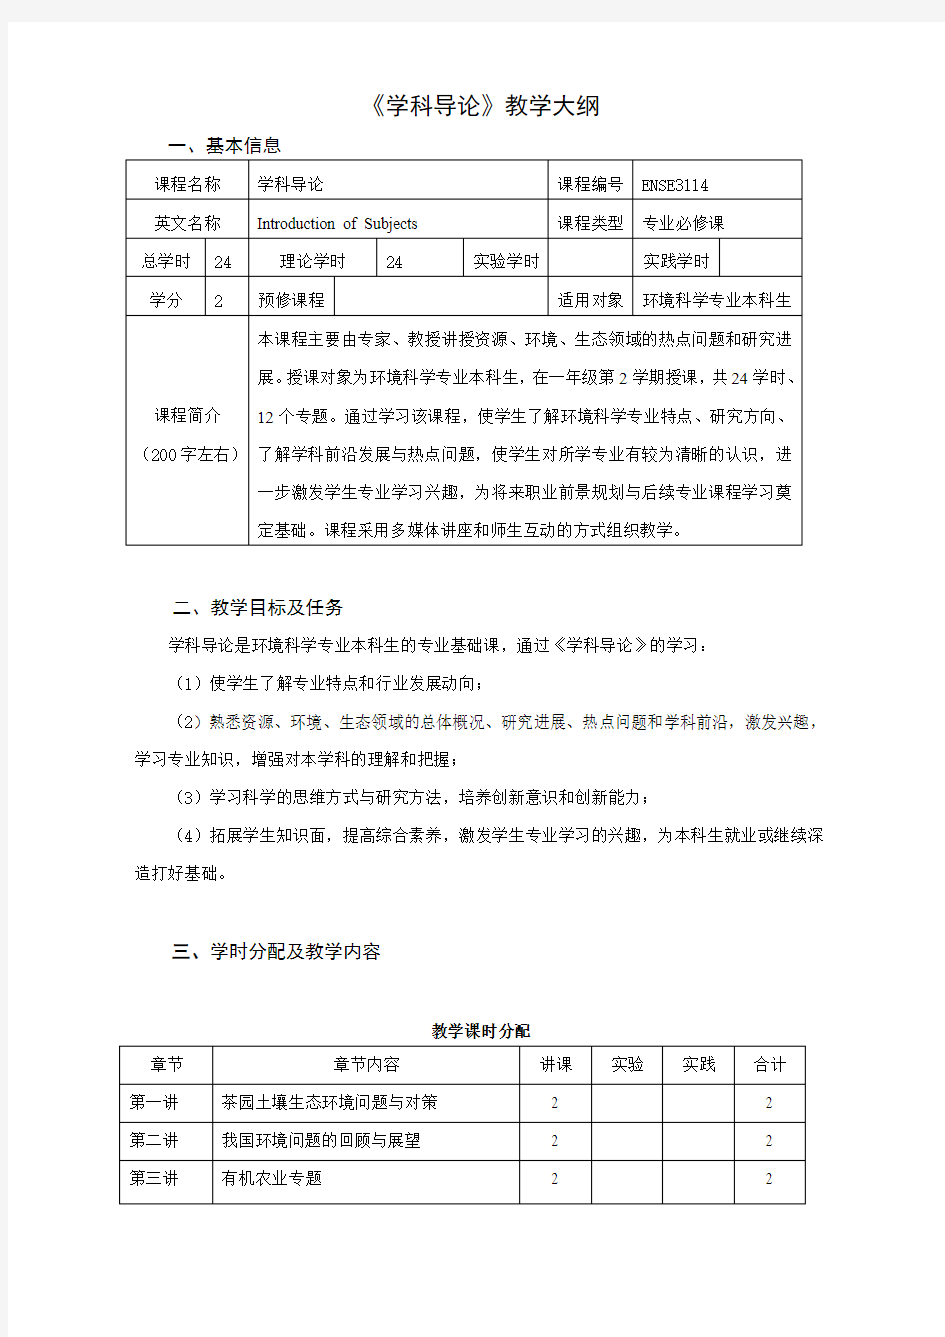 南京农业大学课程教学大纲格式与要求